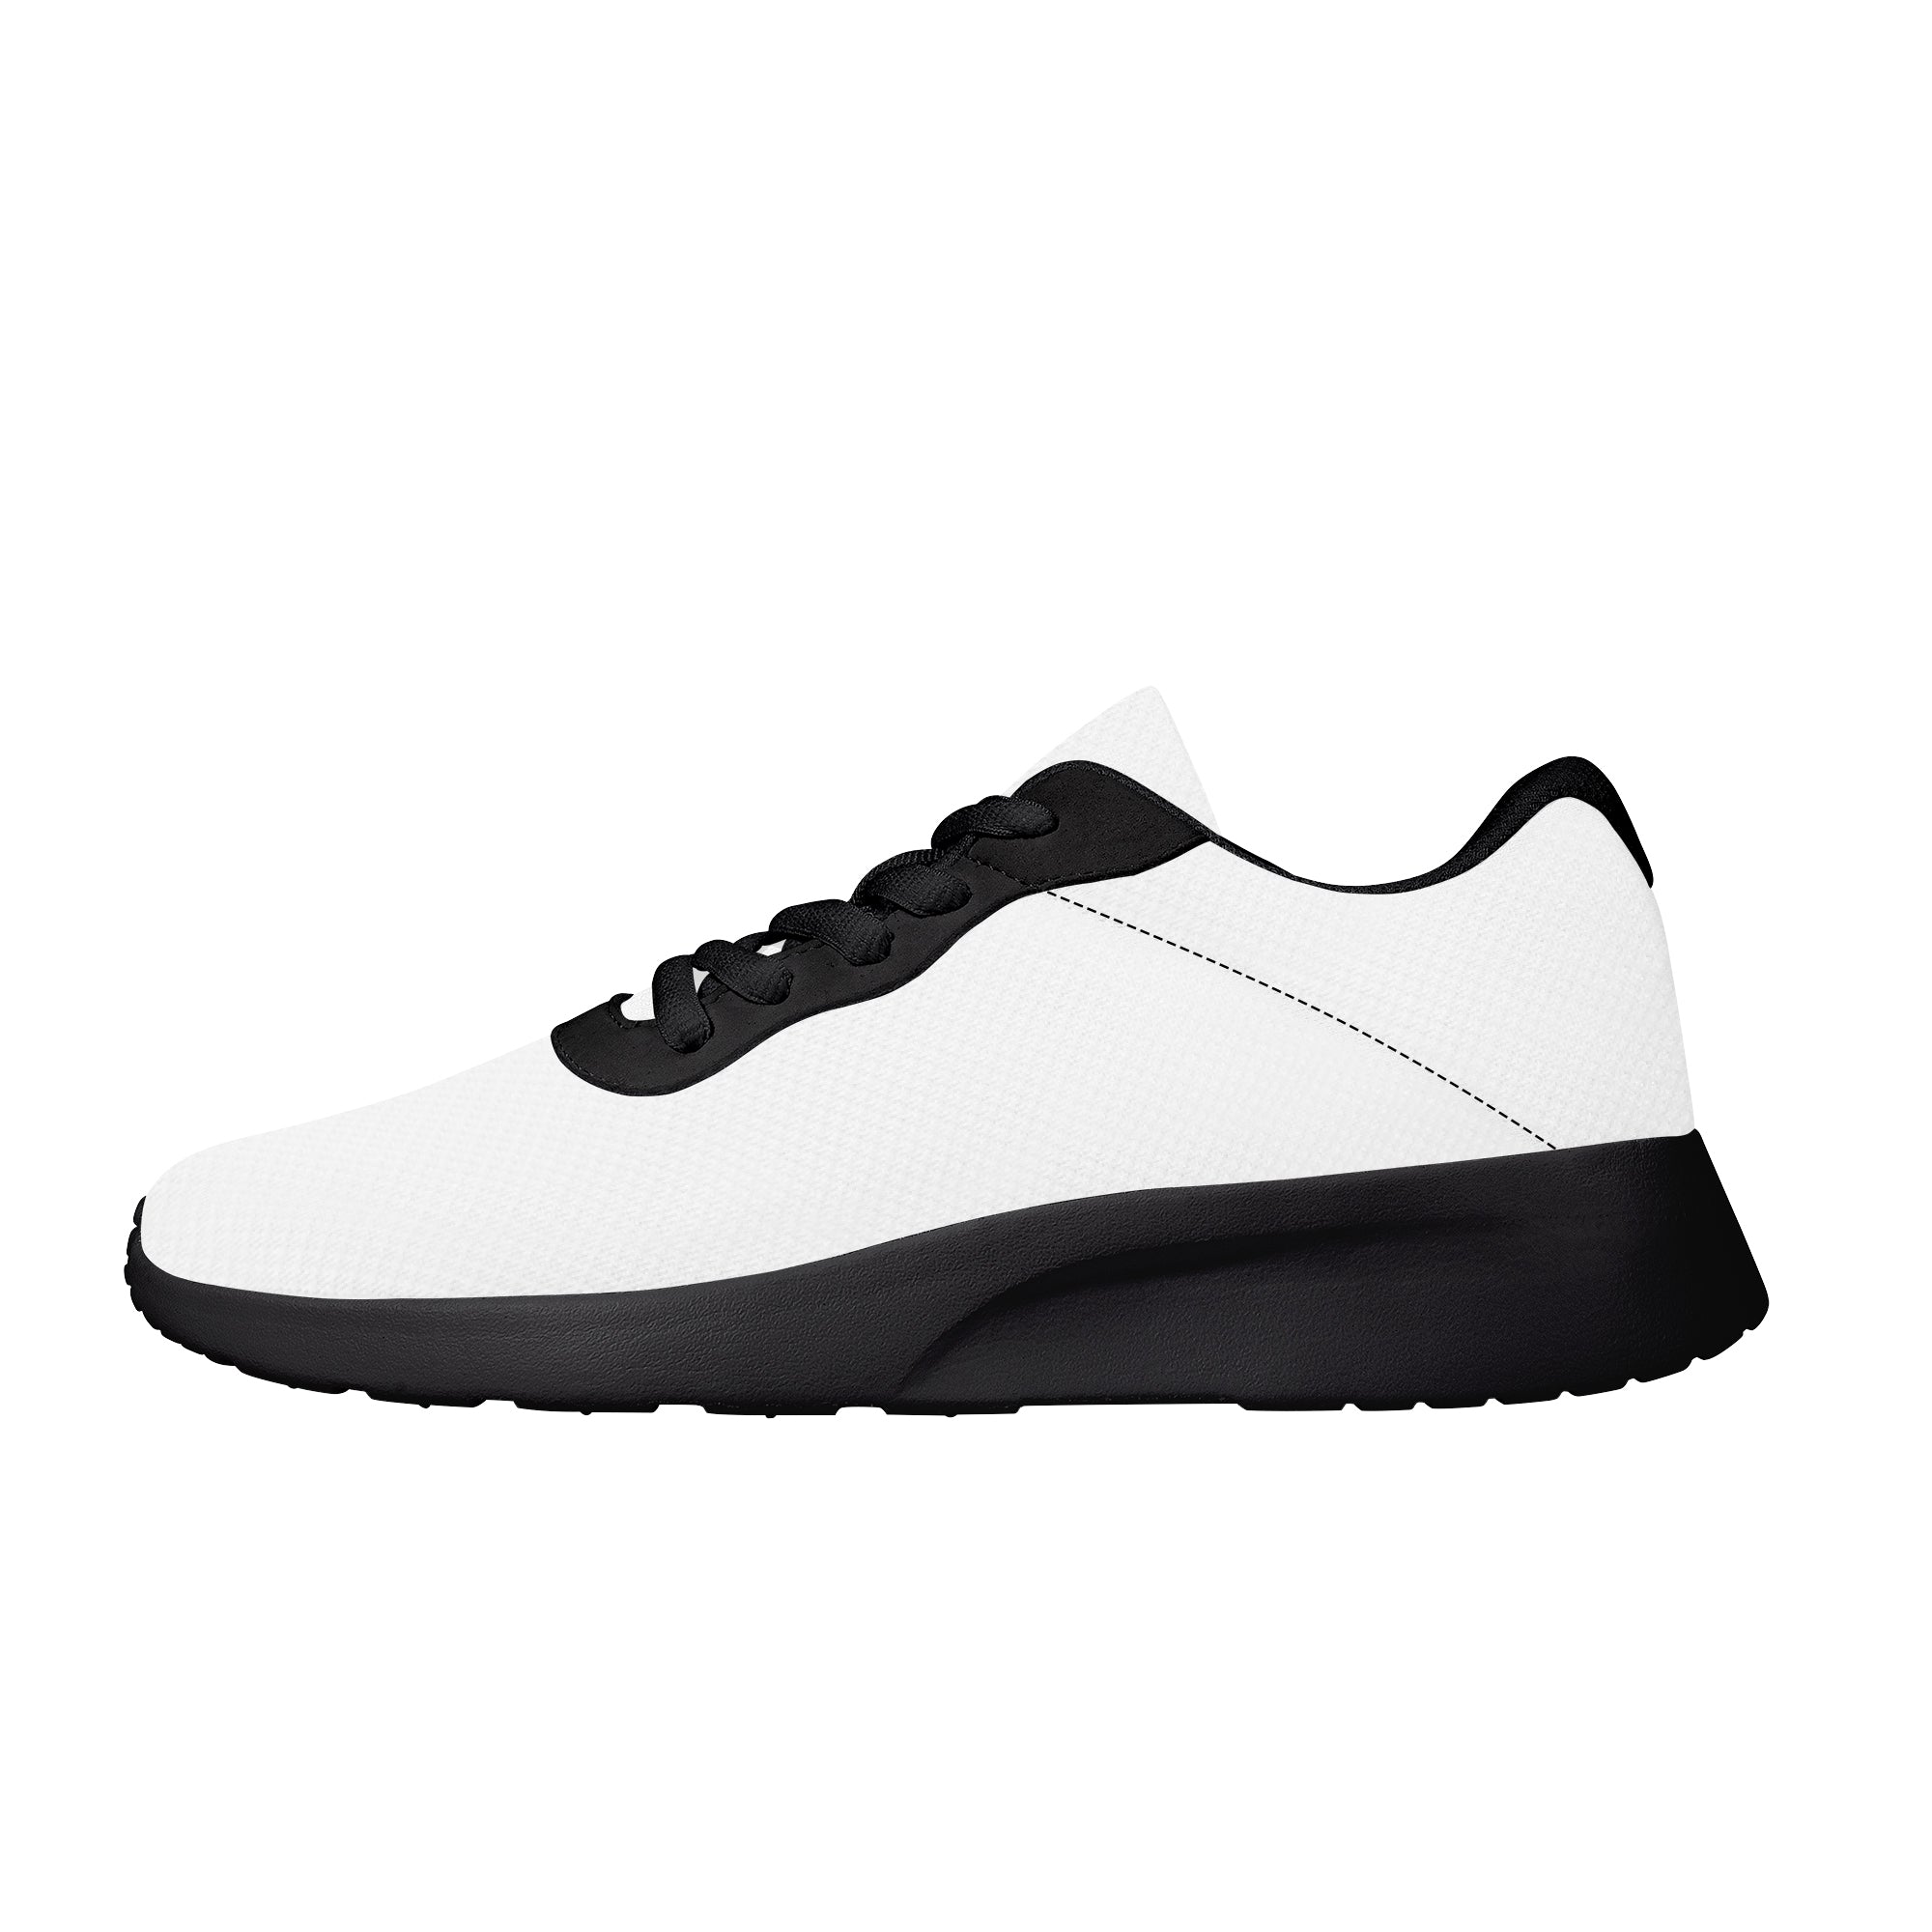 Customizable Air Mesh Running Shoes - Black - Shoe Zero